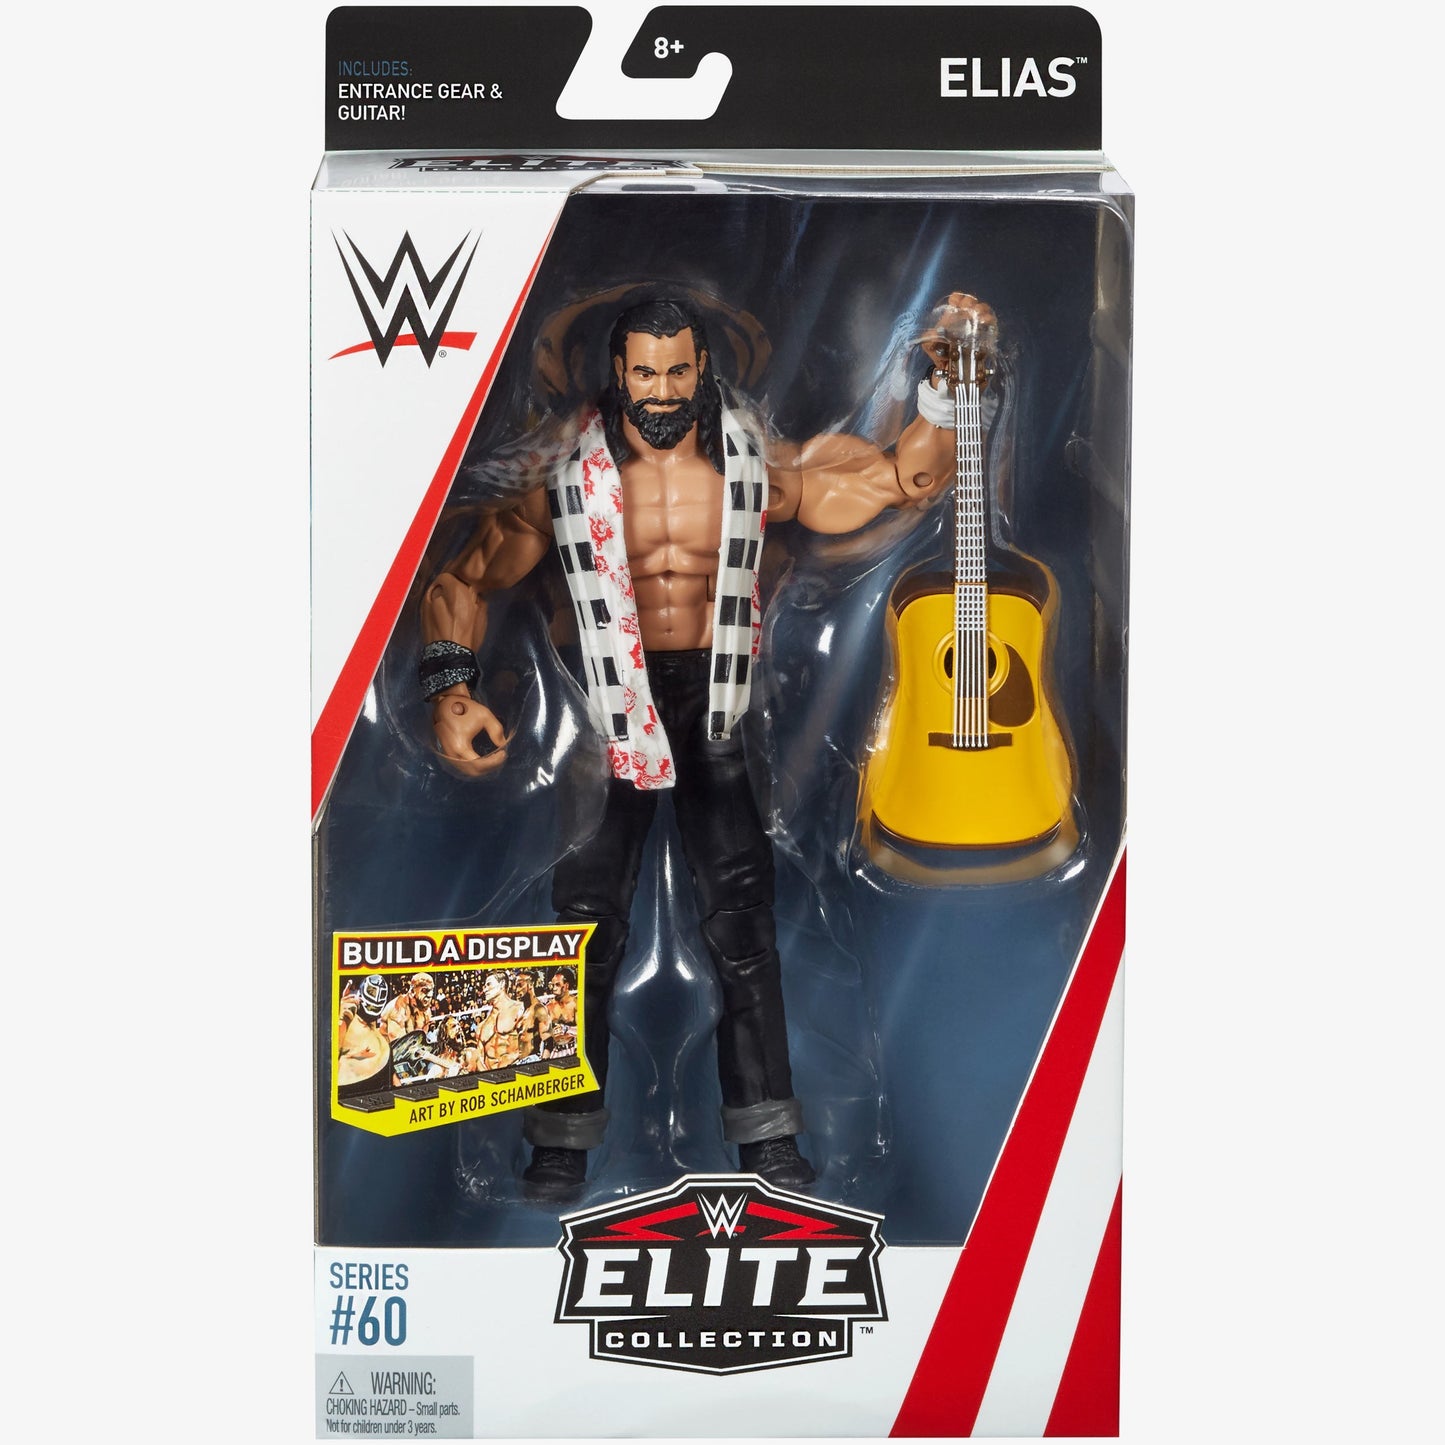 Elias WWE Elite Collection Series #60